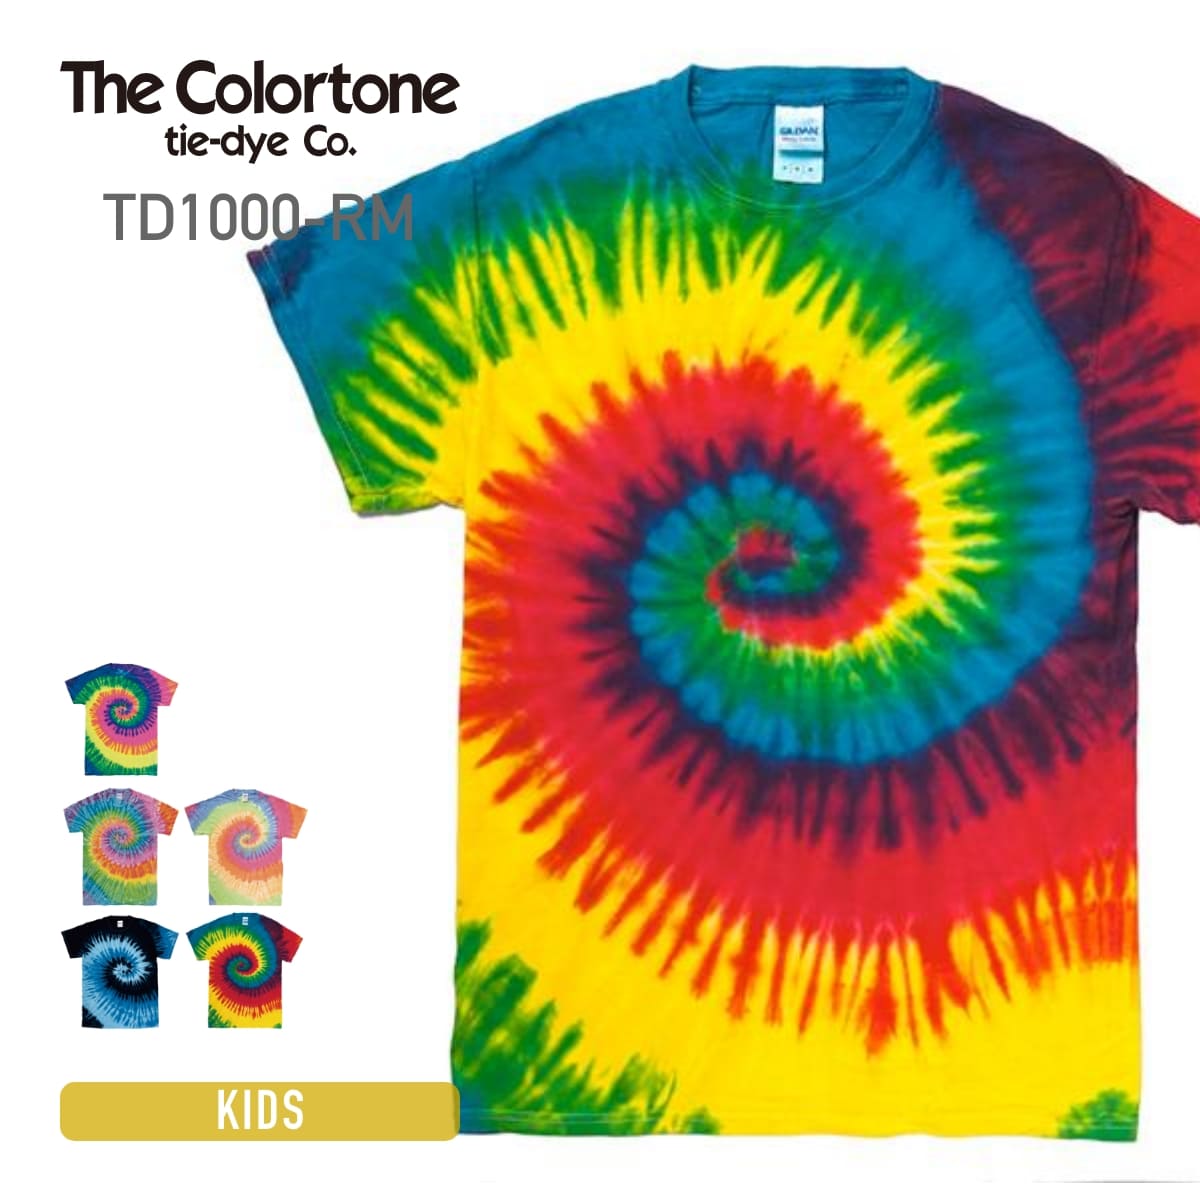 tシャツ タイダイ The Colortone tie-dye Co.カラートーン 5.3 oz レインボー&マルチカラー Tシャツ td1000-rm スポ…